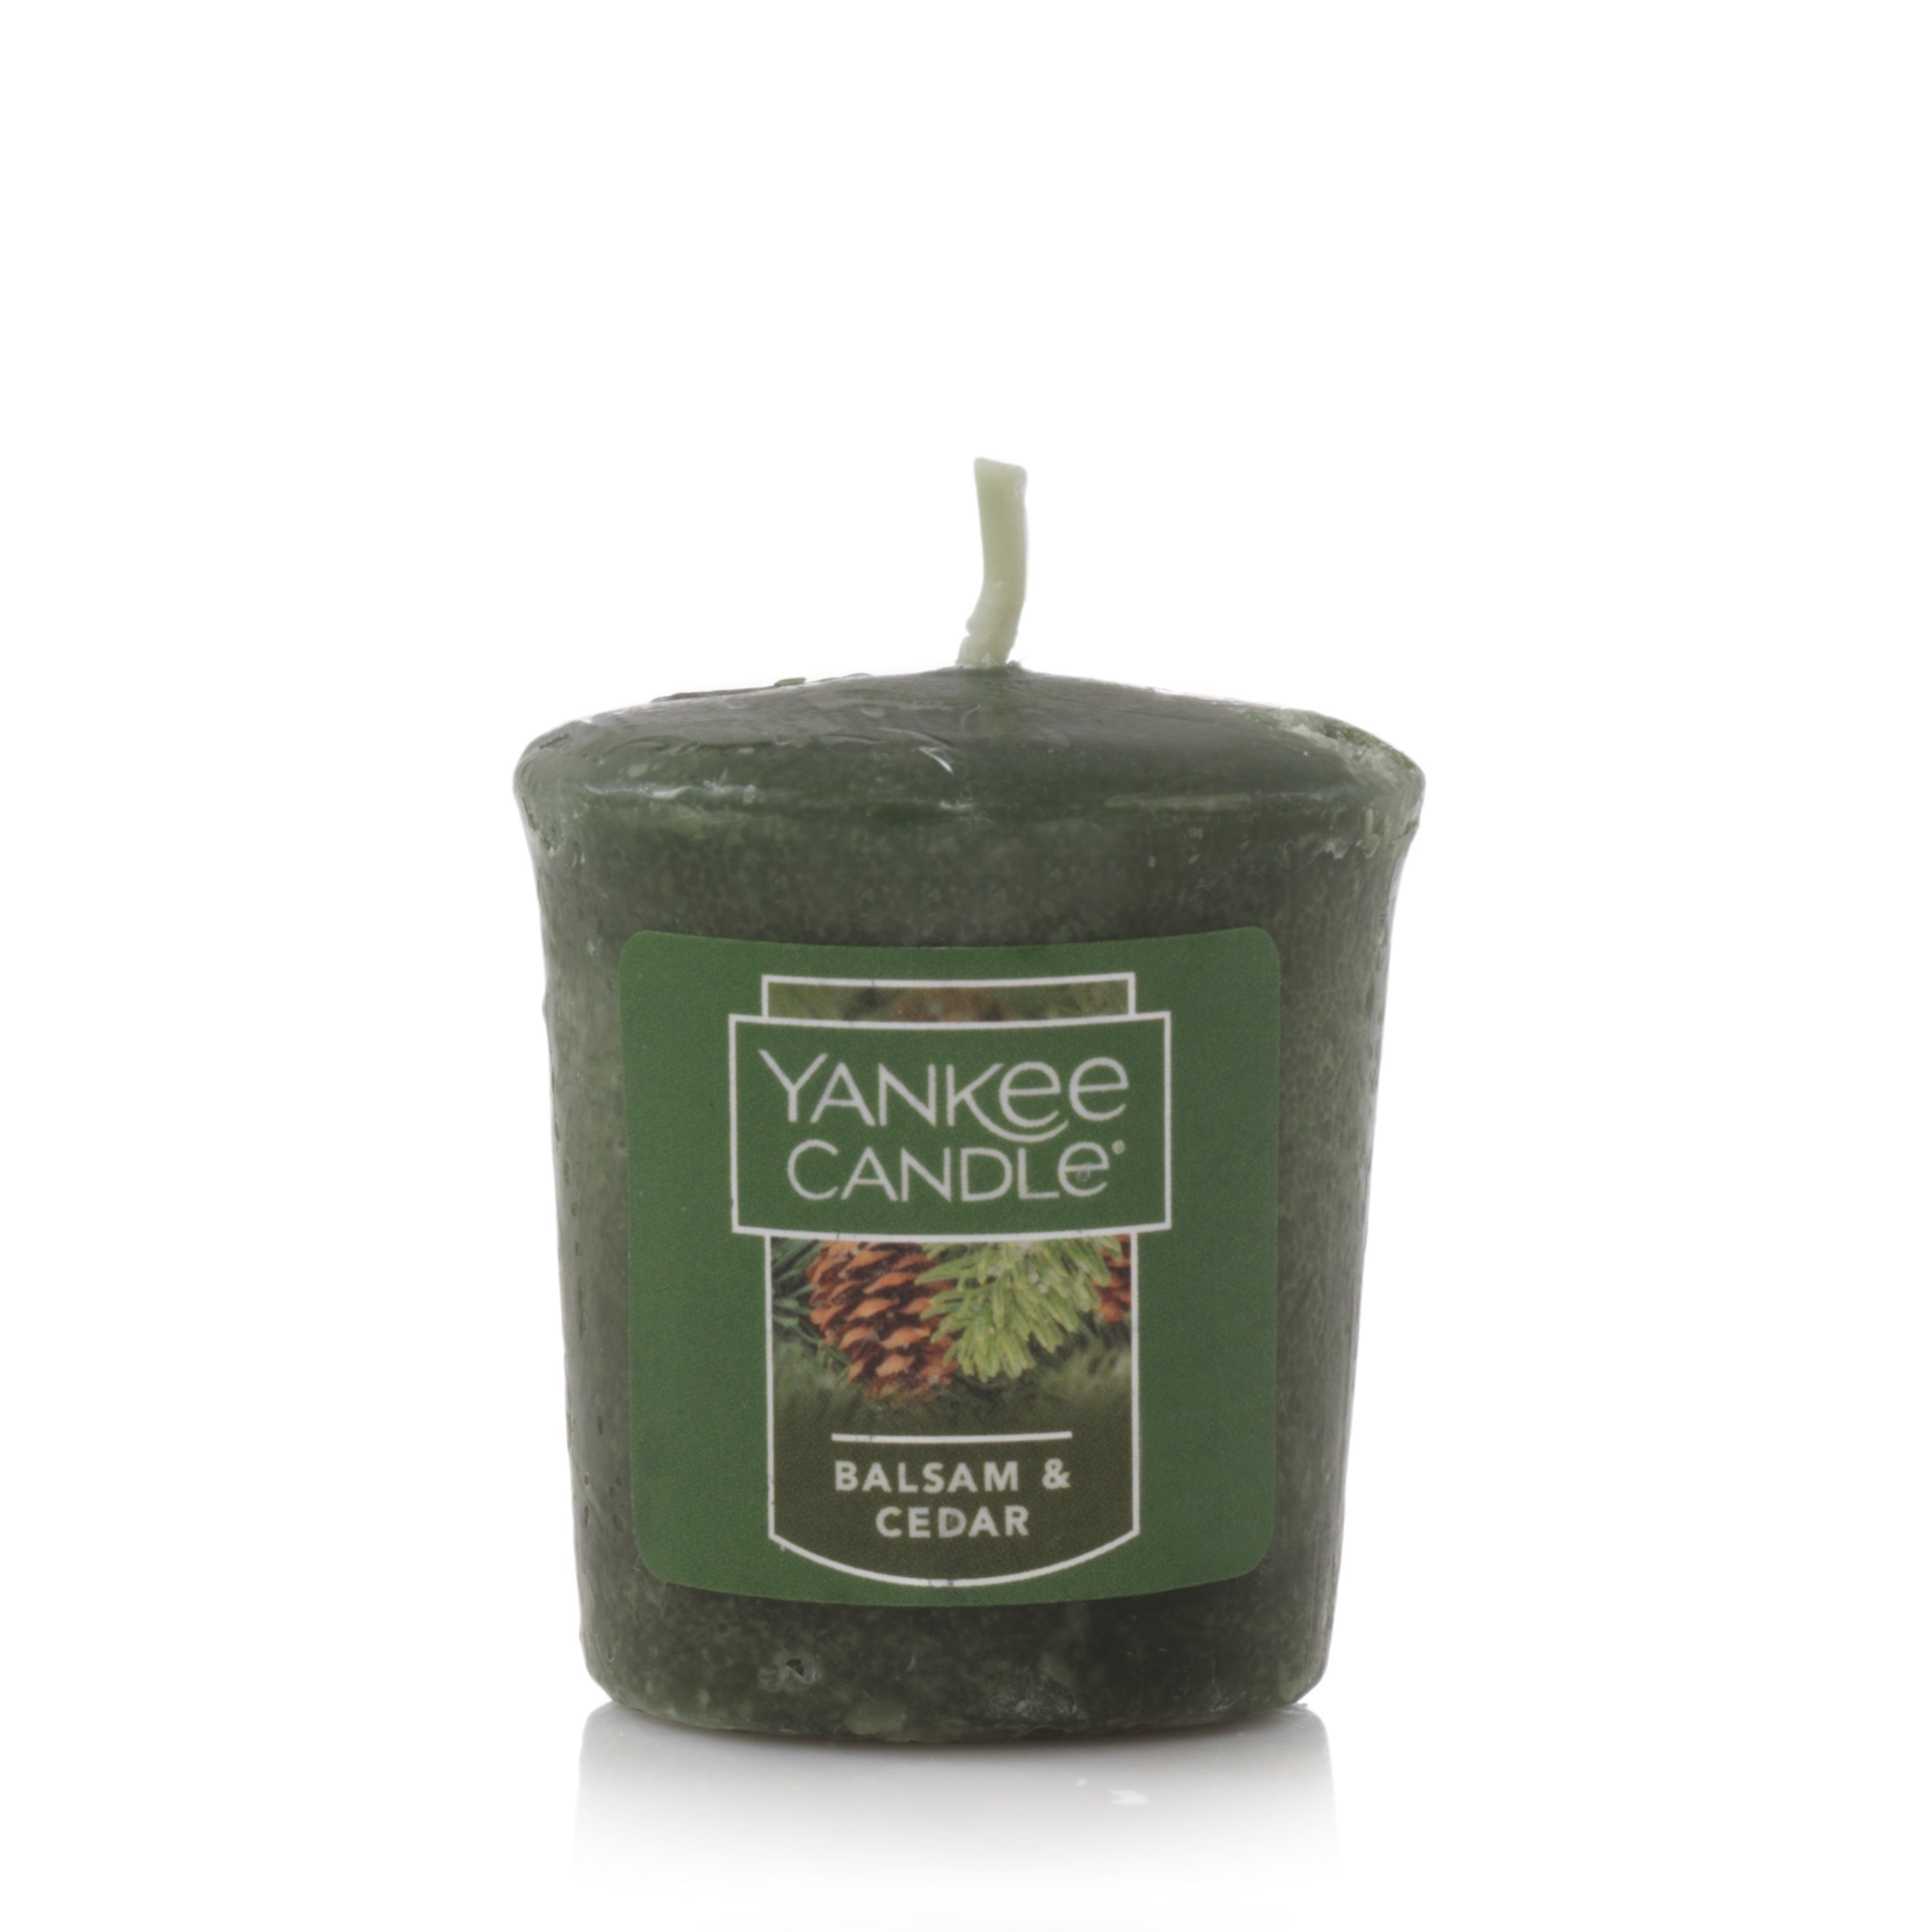 Yankee Candle Votives BALSAM & CEDAR Wax Melts Lot of 6 Green Wax New Forest 